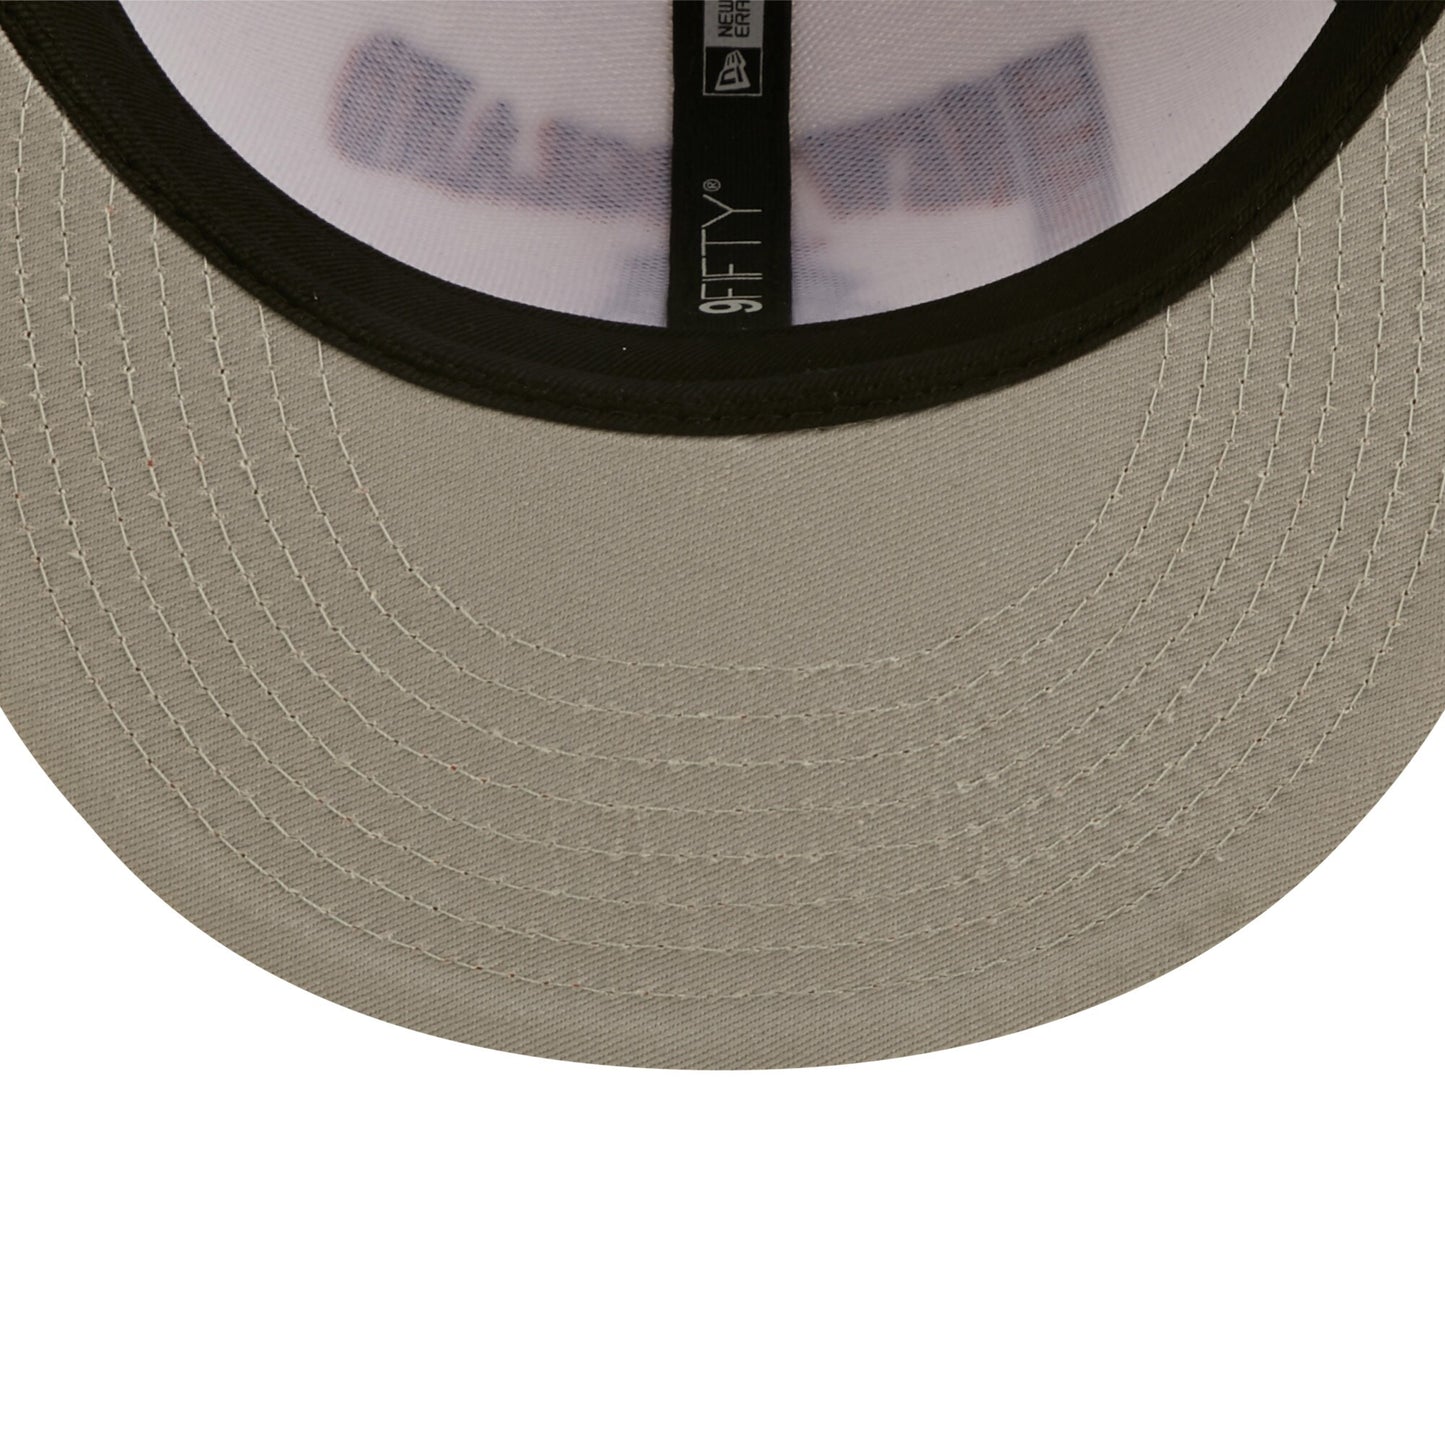 New England Patriots Historic Logo Retro Sport 3 Tone New Era 9FIFTY Snapback Hat